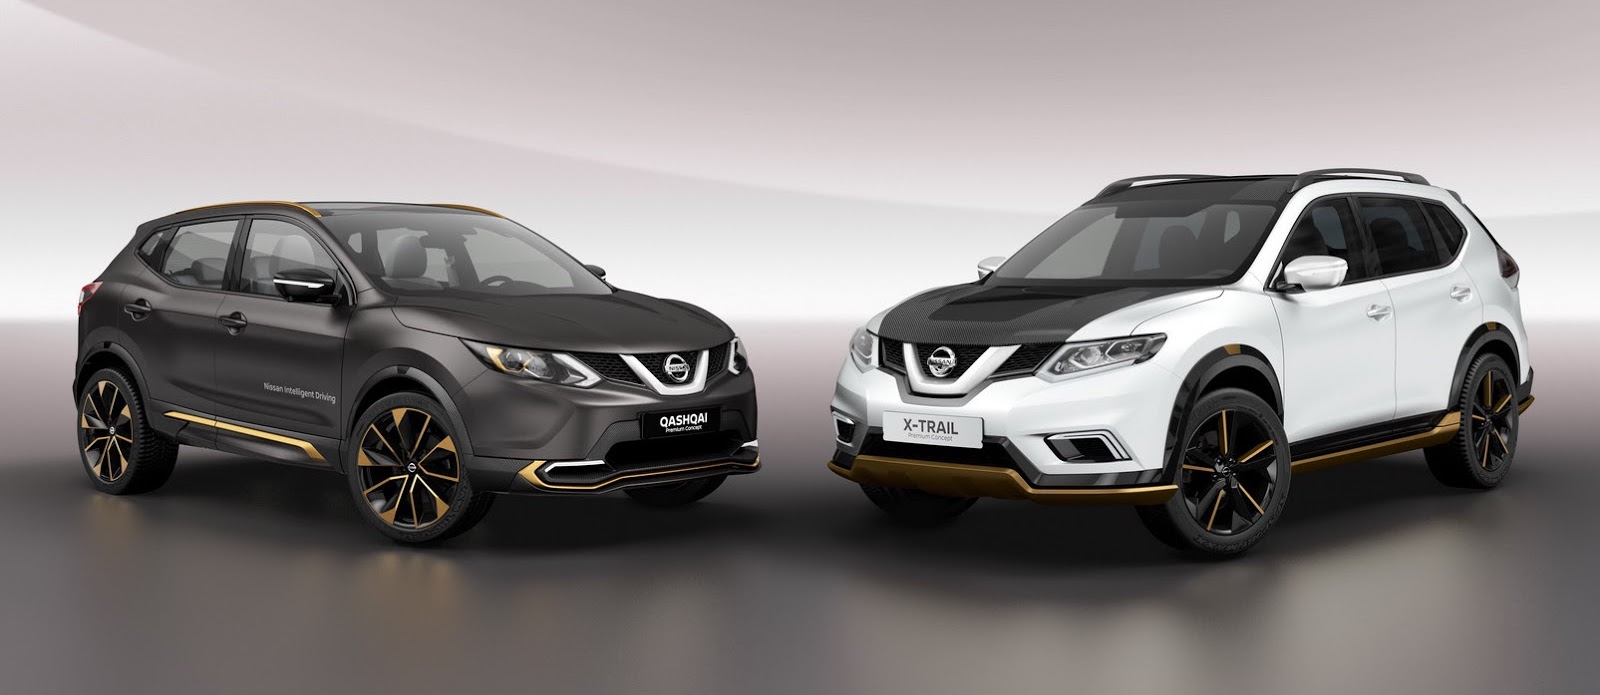 Nissan Premium Concepts